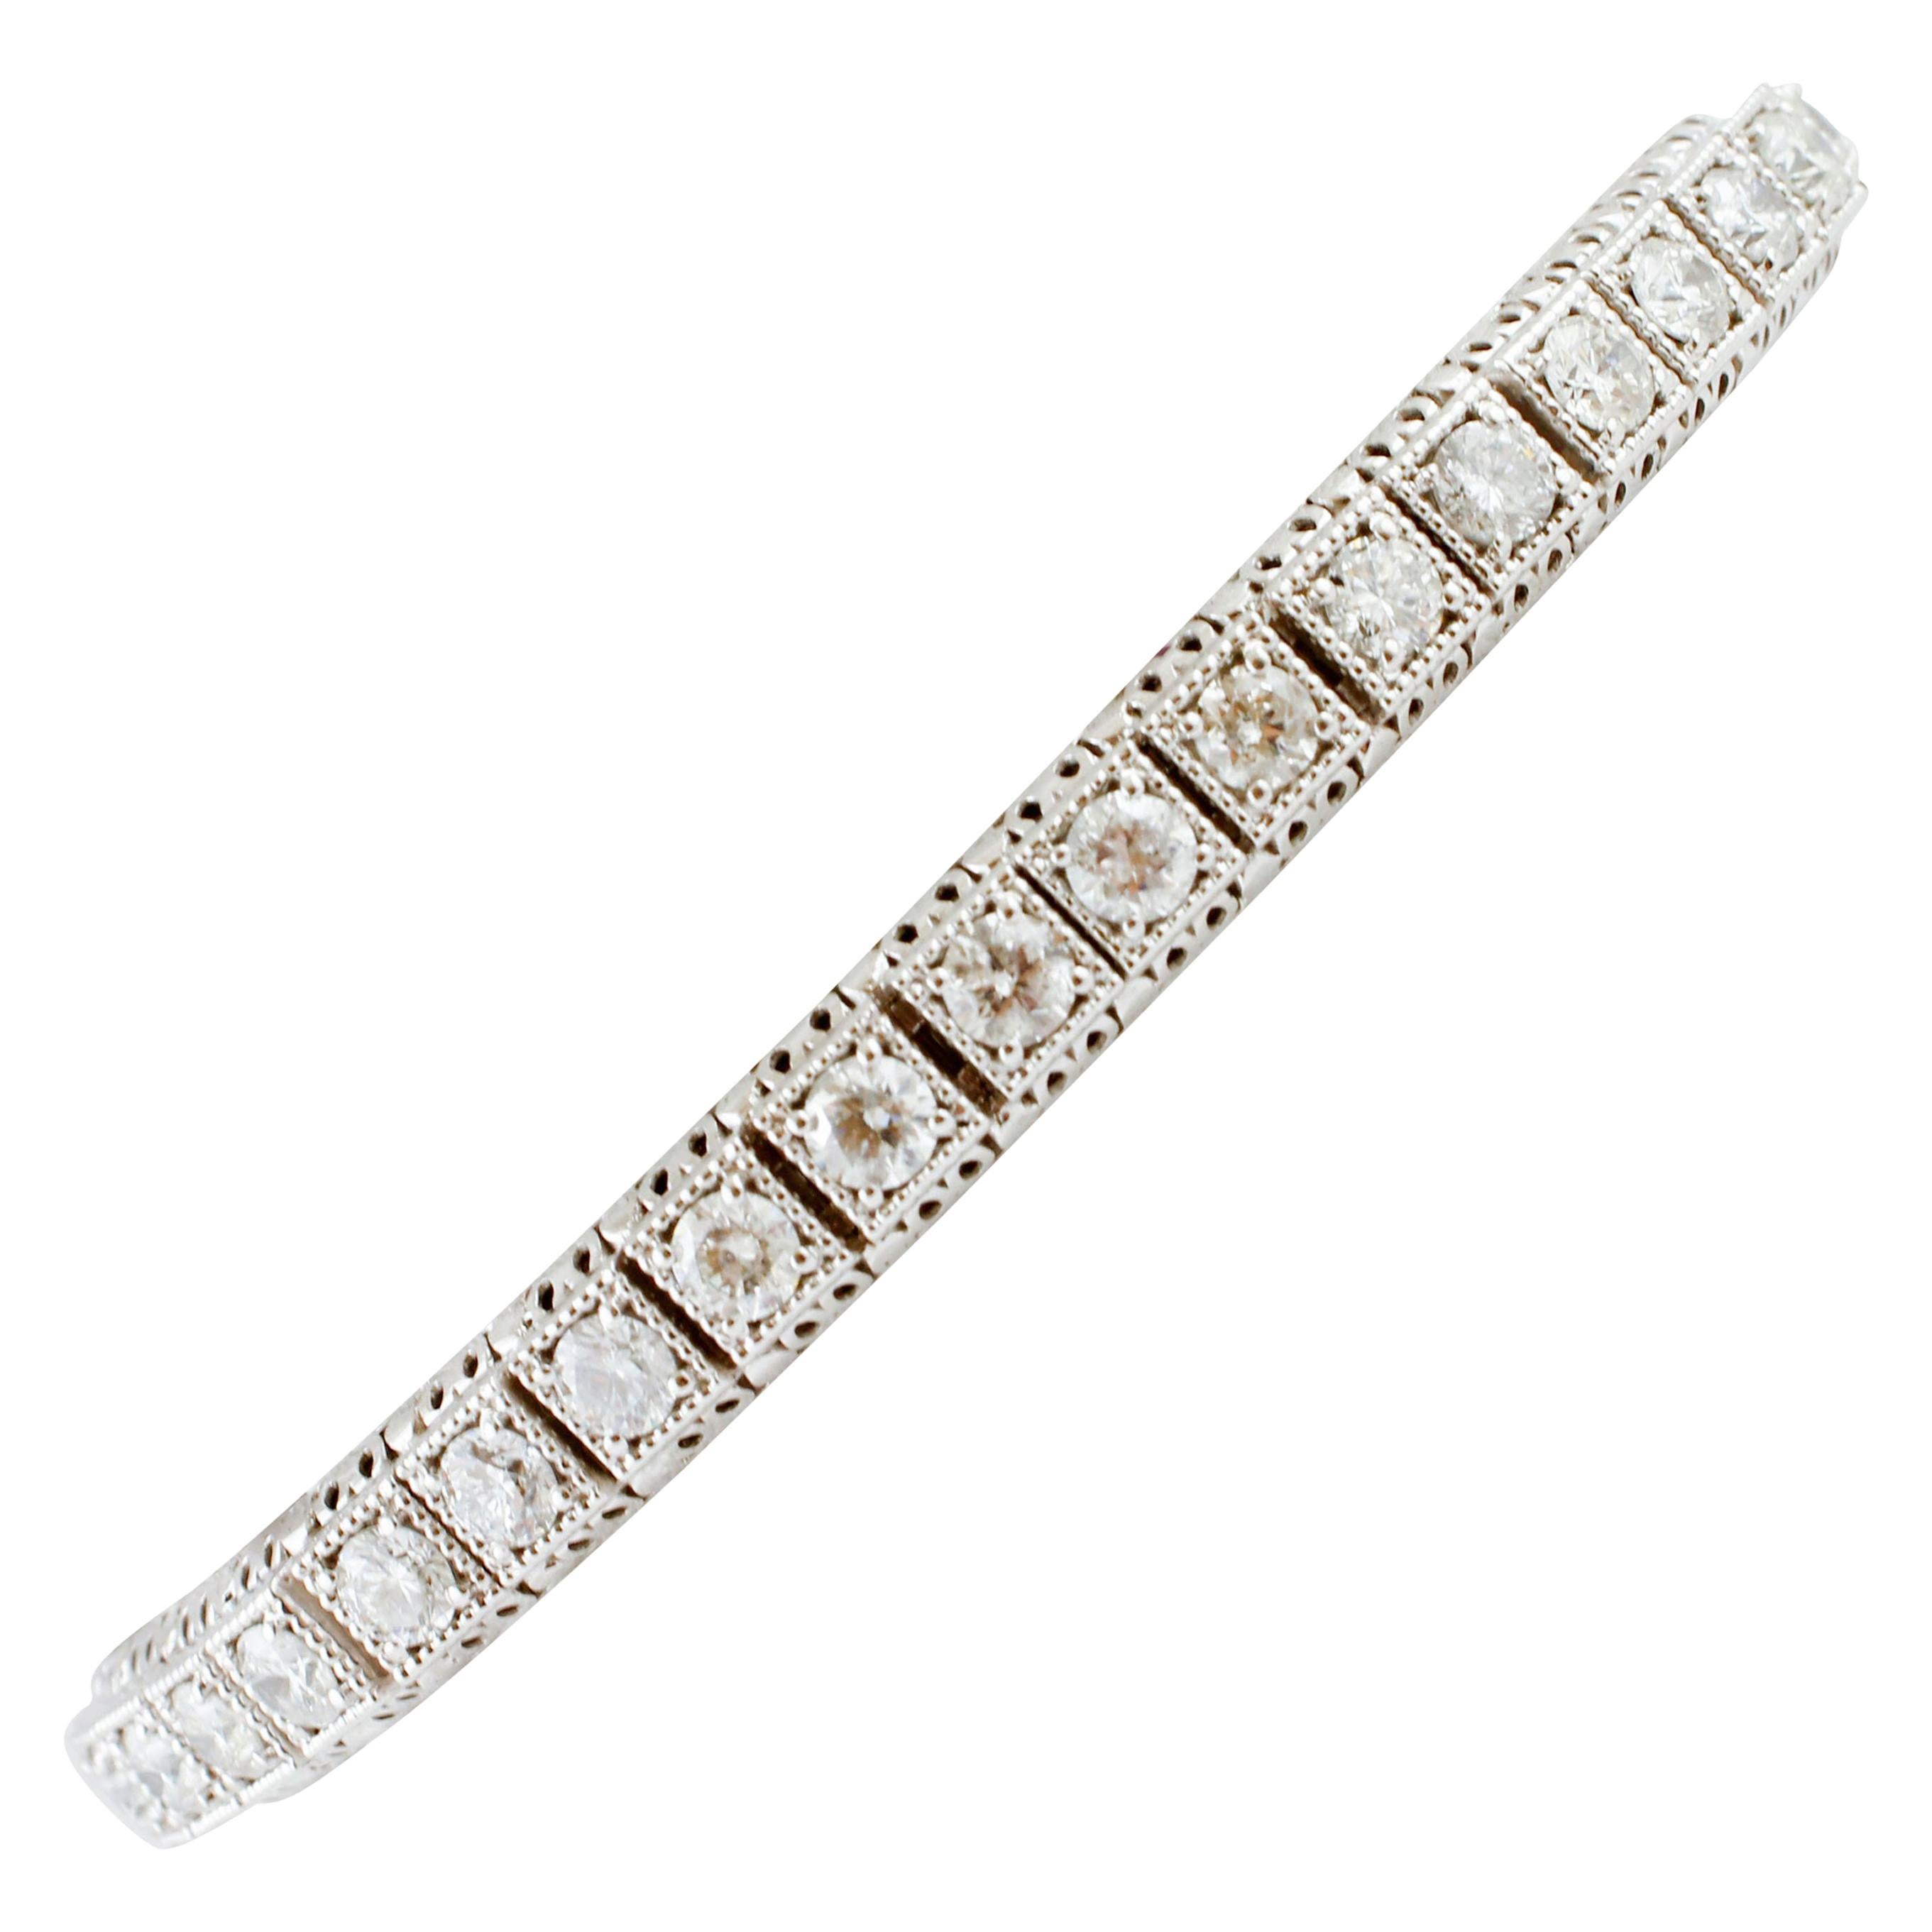 7.8 Carat White Diamonds, White Gold Tennis Bracelet